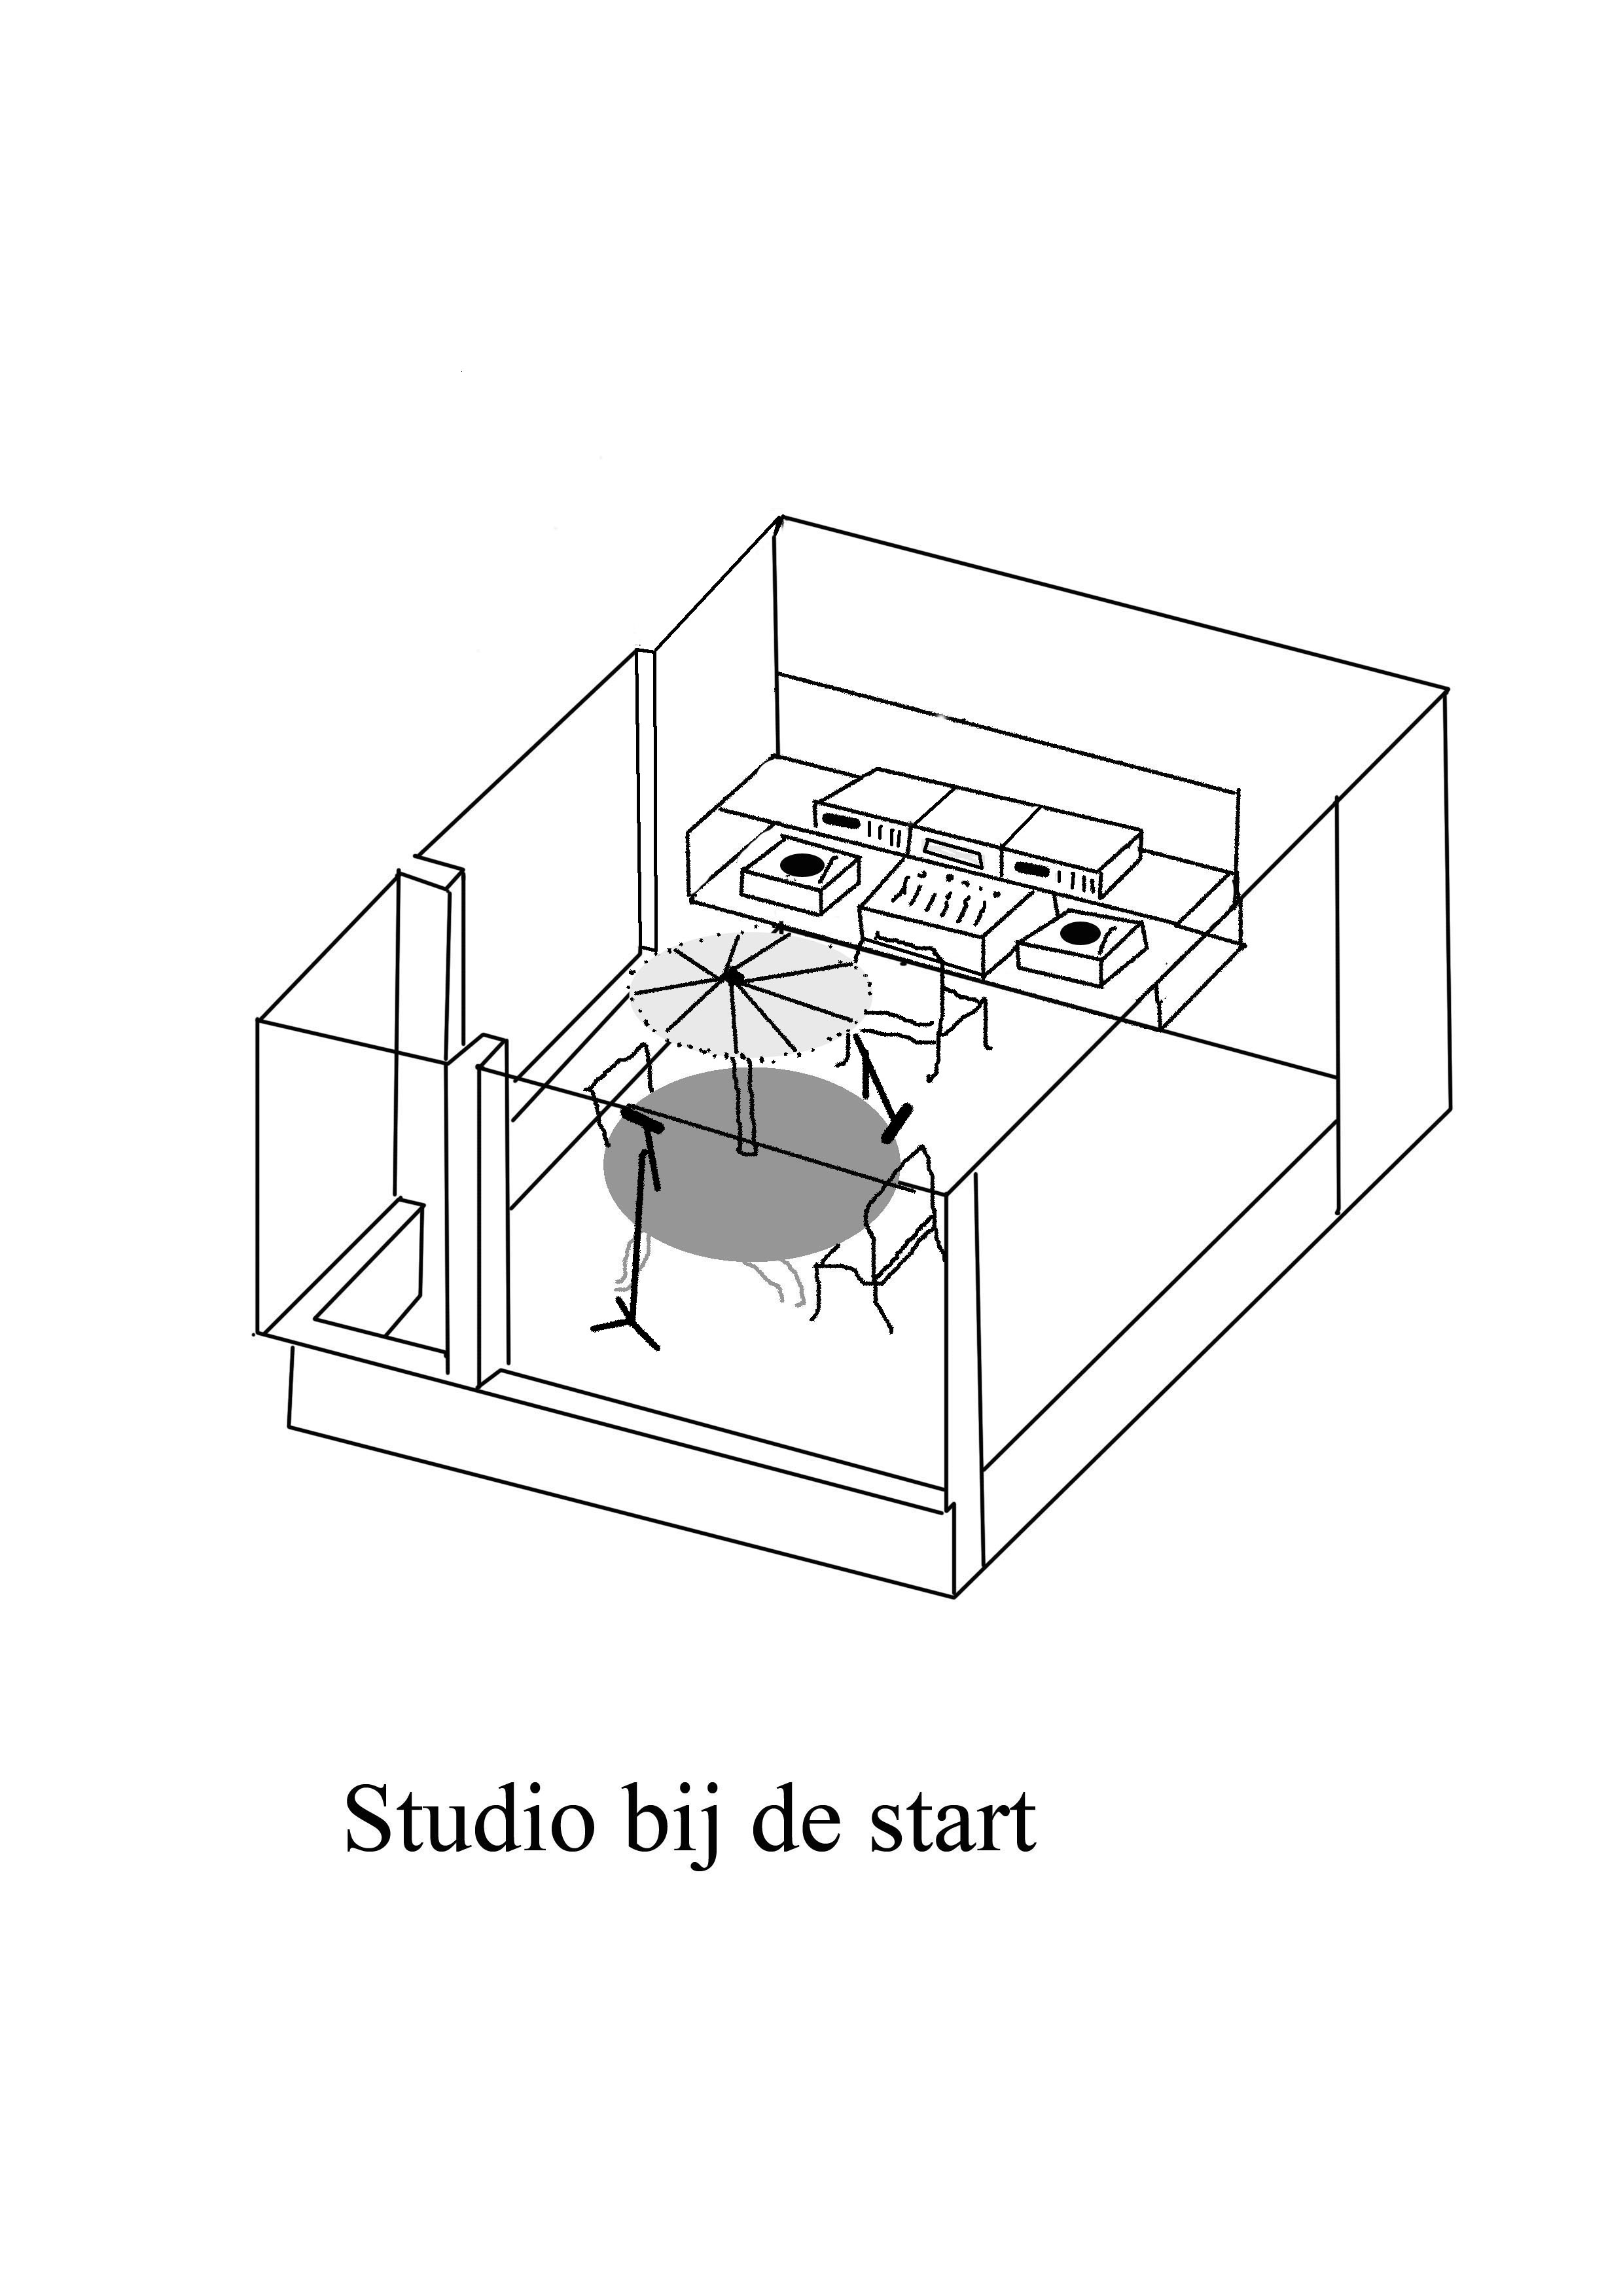 3D tekening Studio in vergaderzaaltje 1991